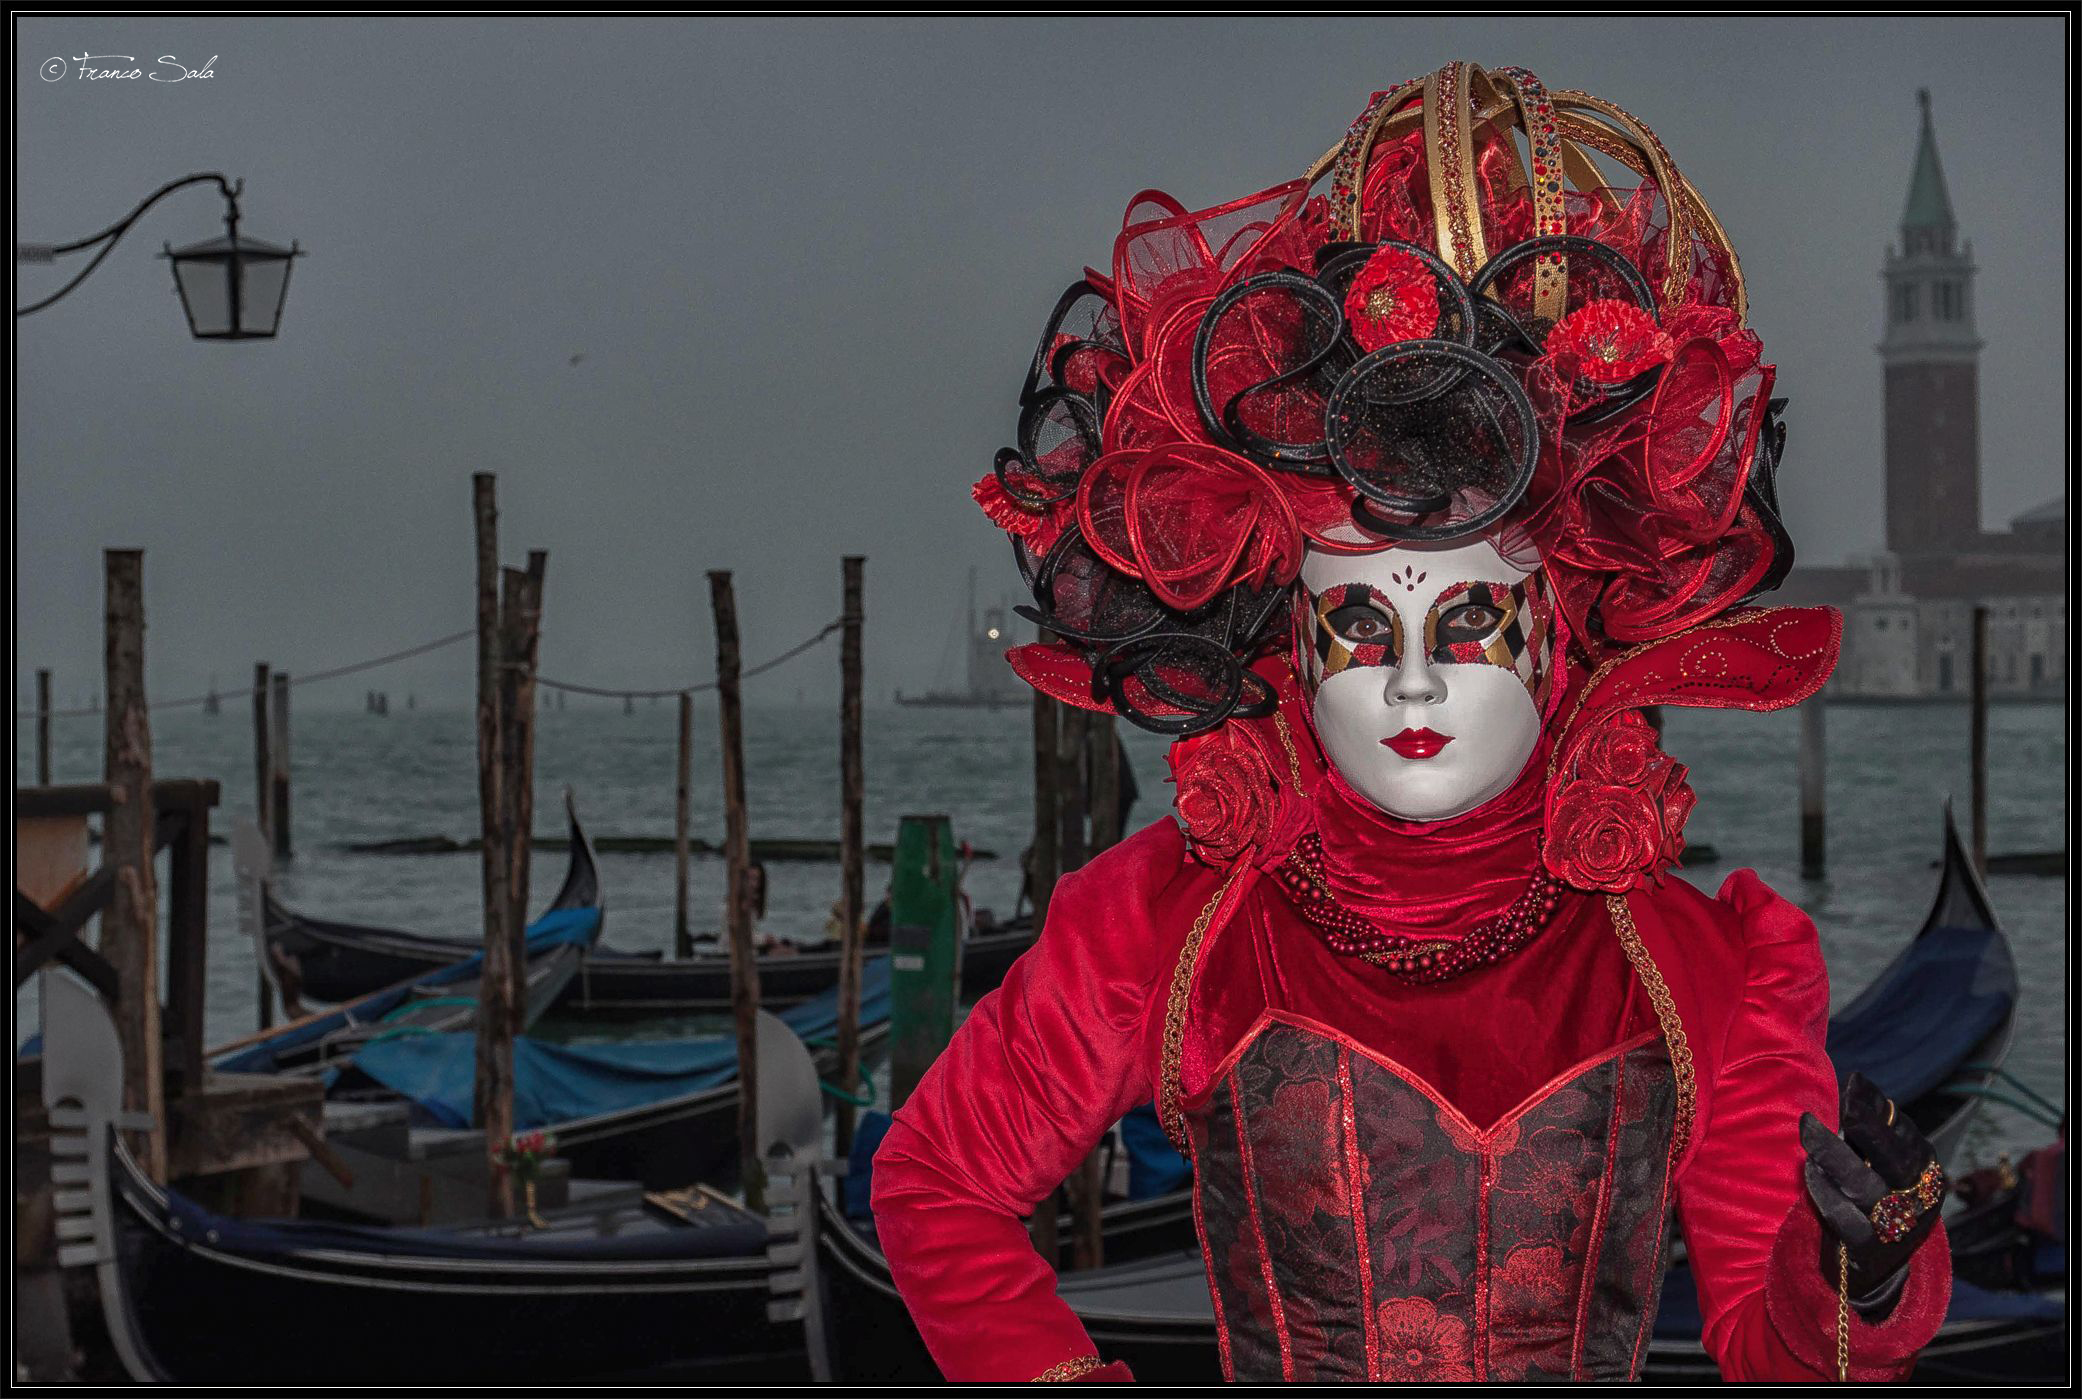 Venetian masks...